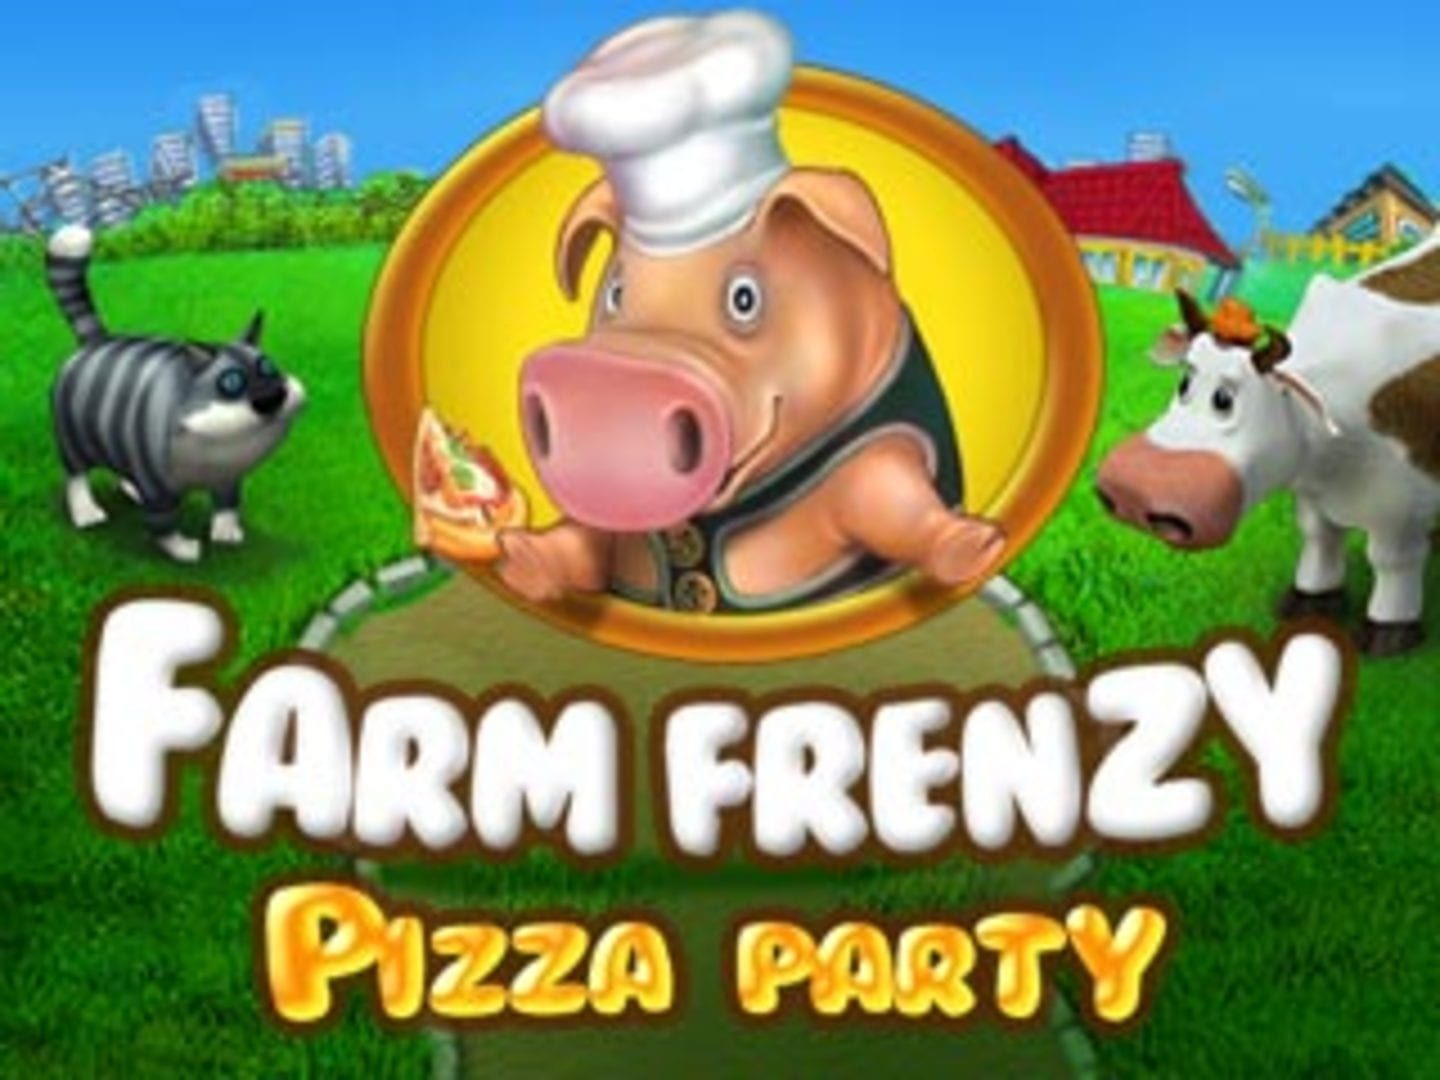 веселая ферма печем пиццу играть онлайн бесплатно полная версия фото 45